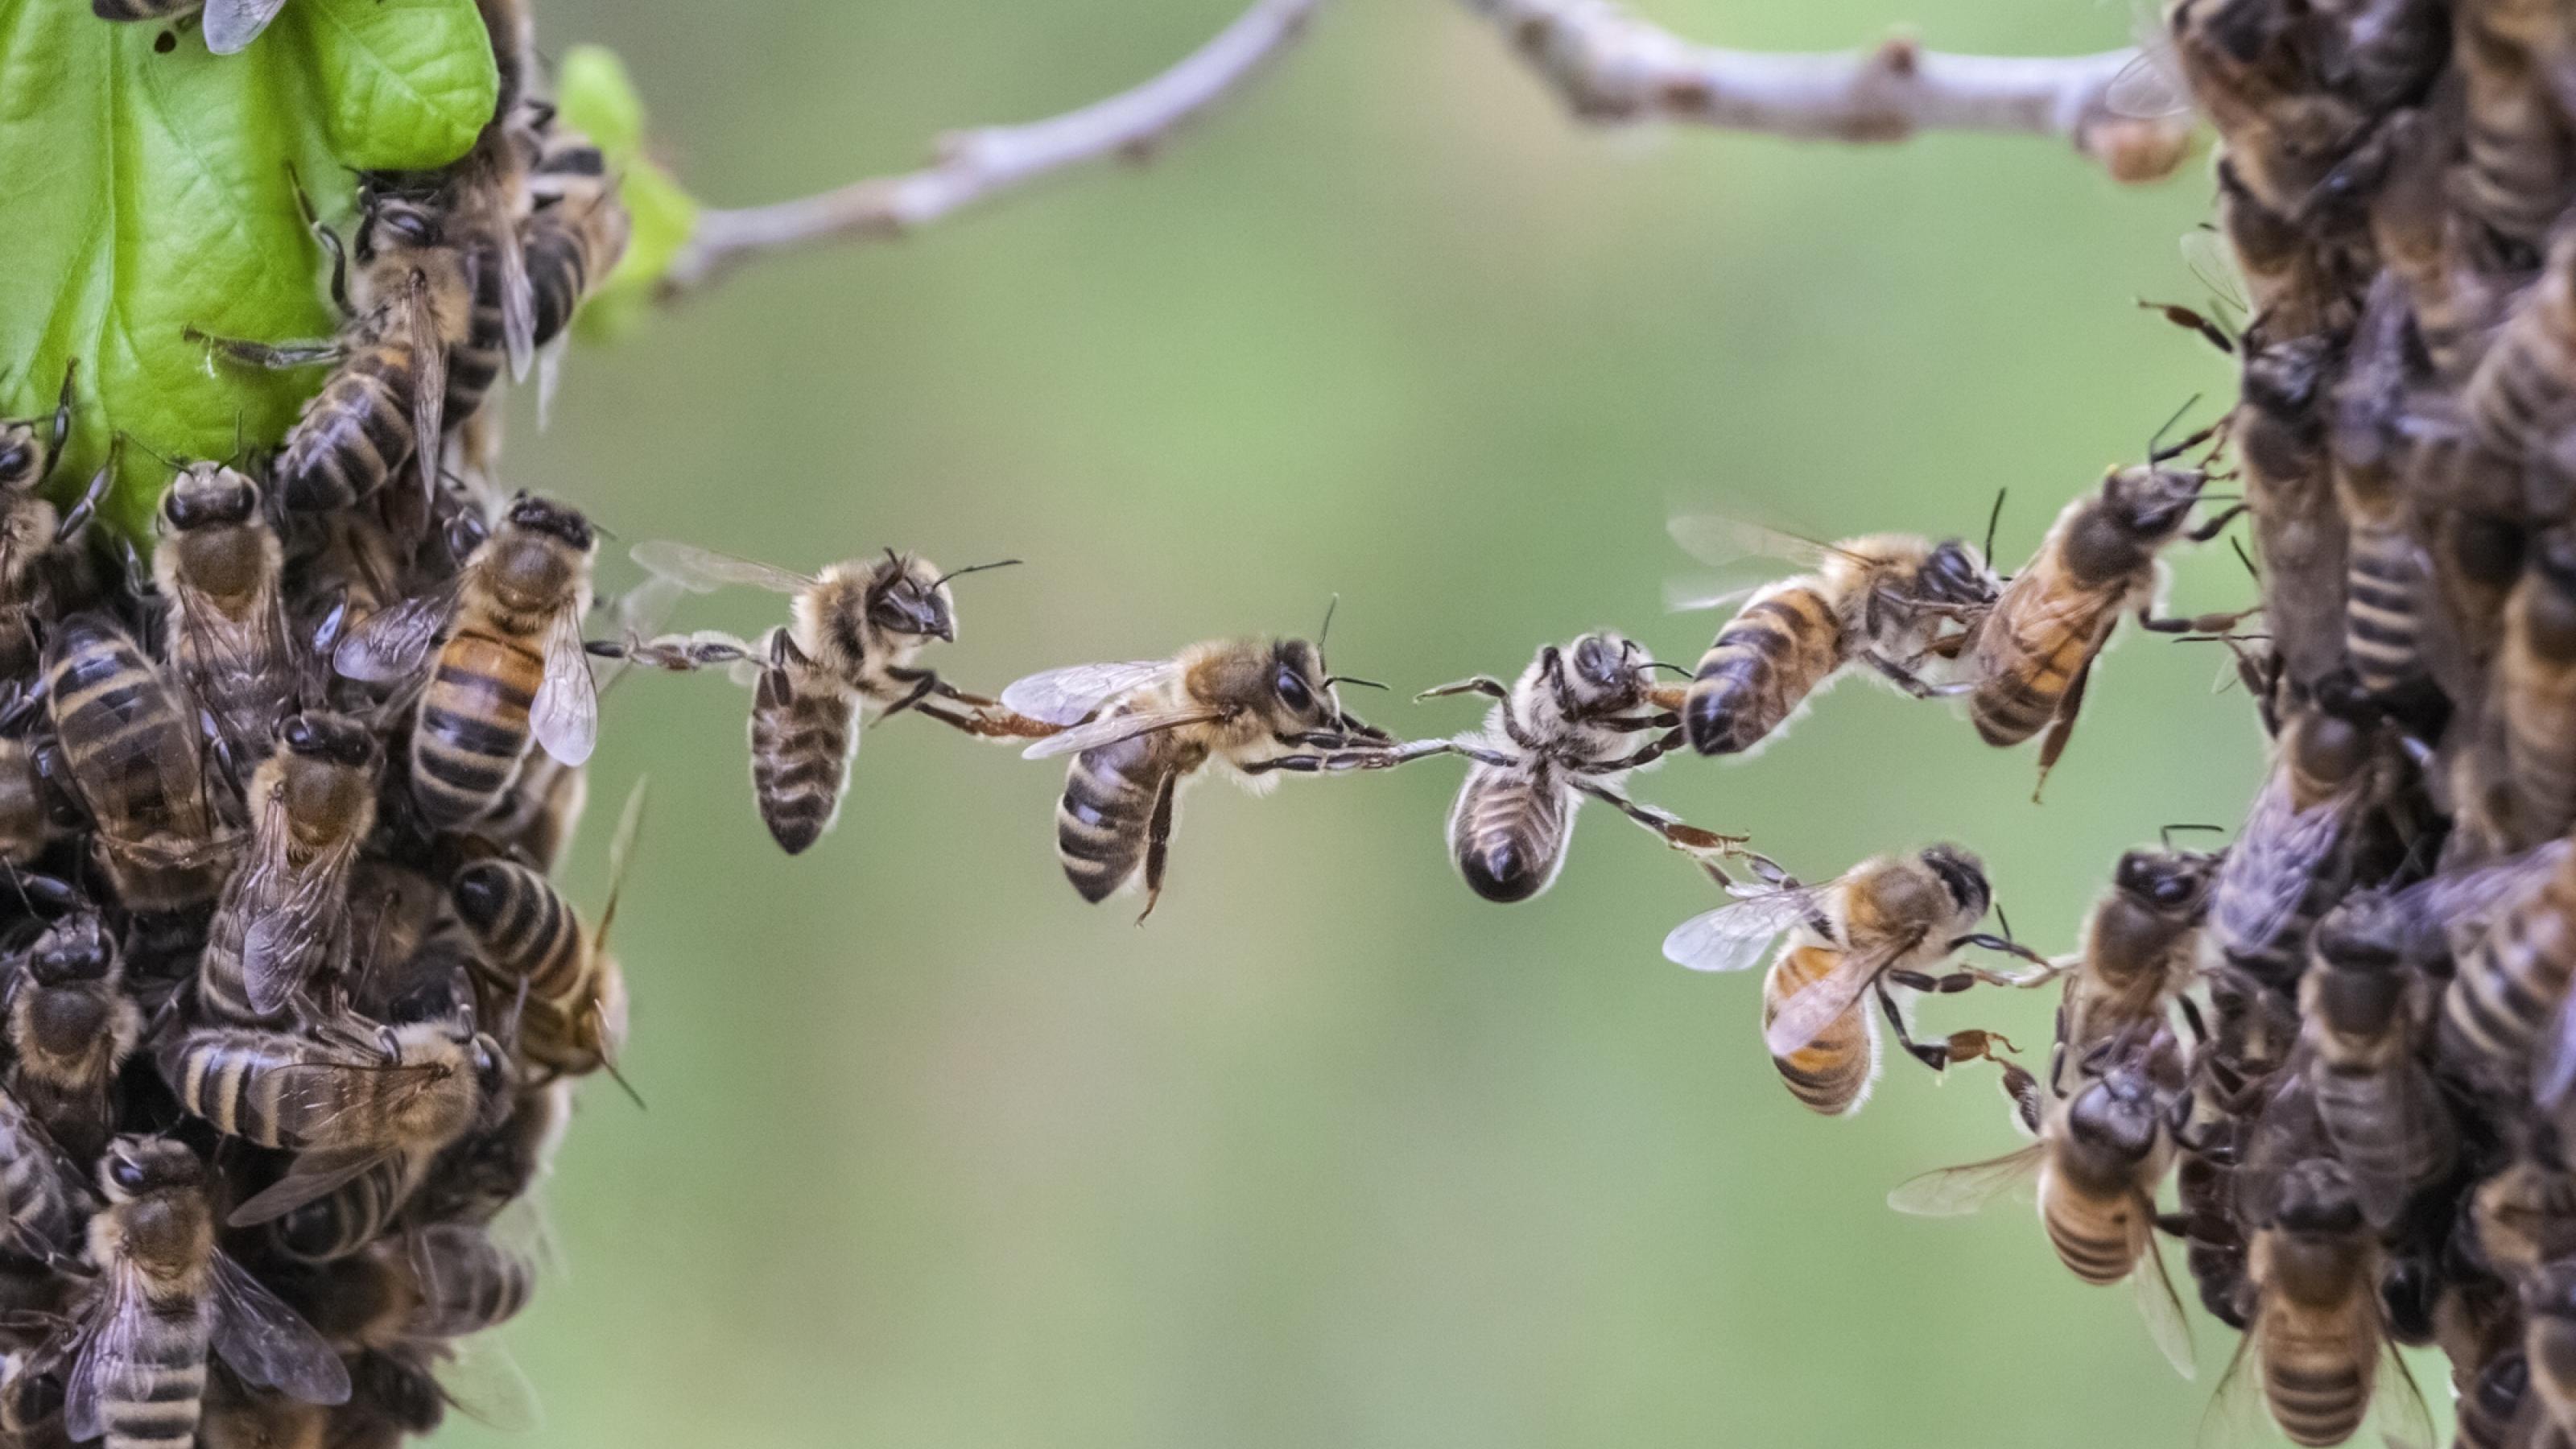 Bienen bilden mit ihren Körpern eine Brücke zwischen zwei Teilen eines Bienenschwarms. KI-Forscher wollen sich von Intelligenzleistungen lebender Organismen inspirieren lassen.